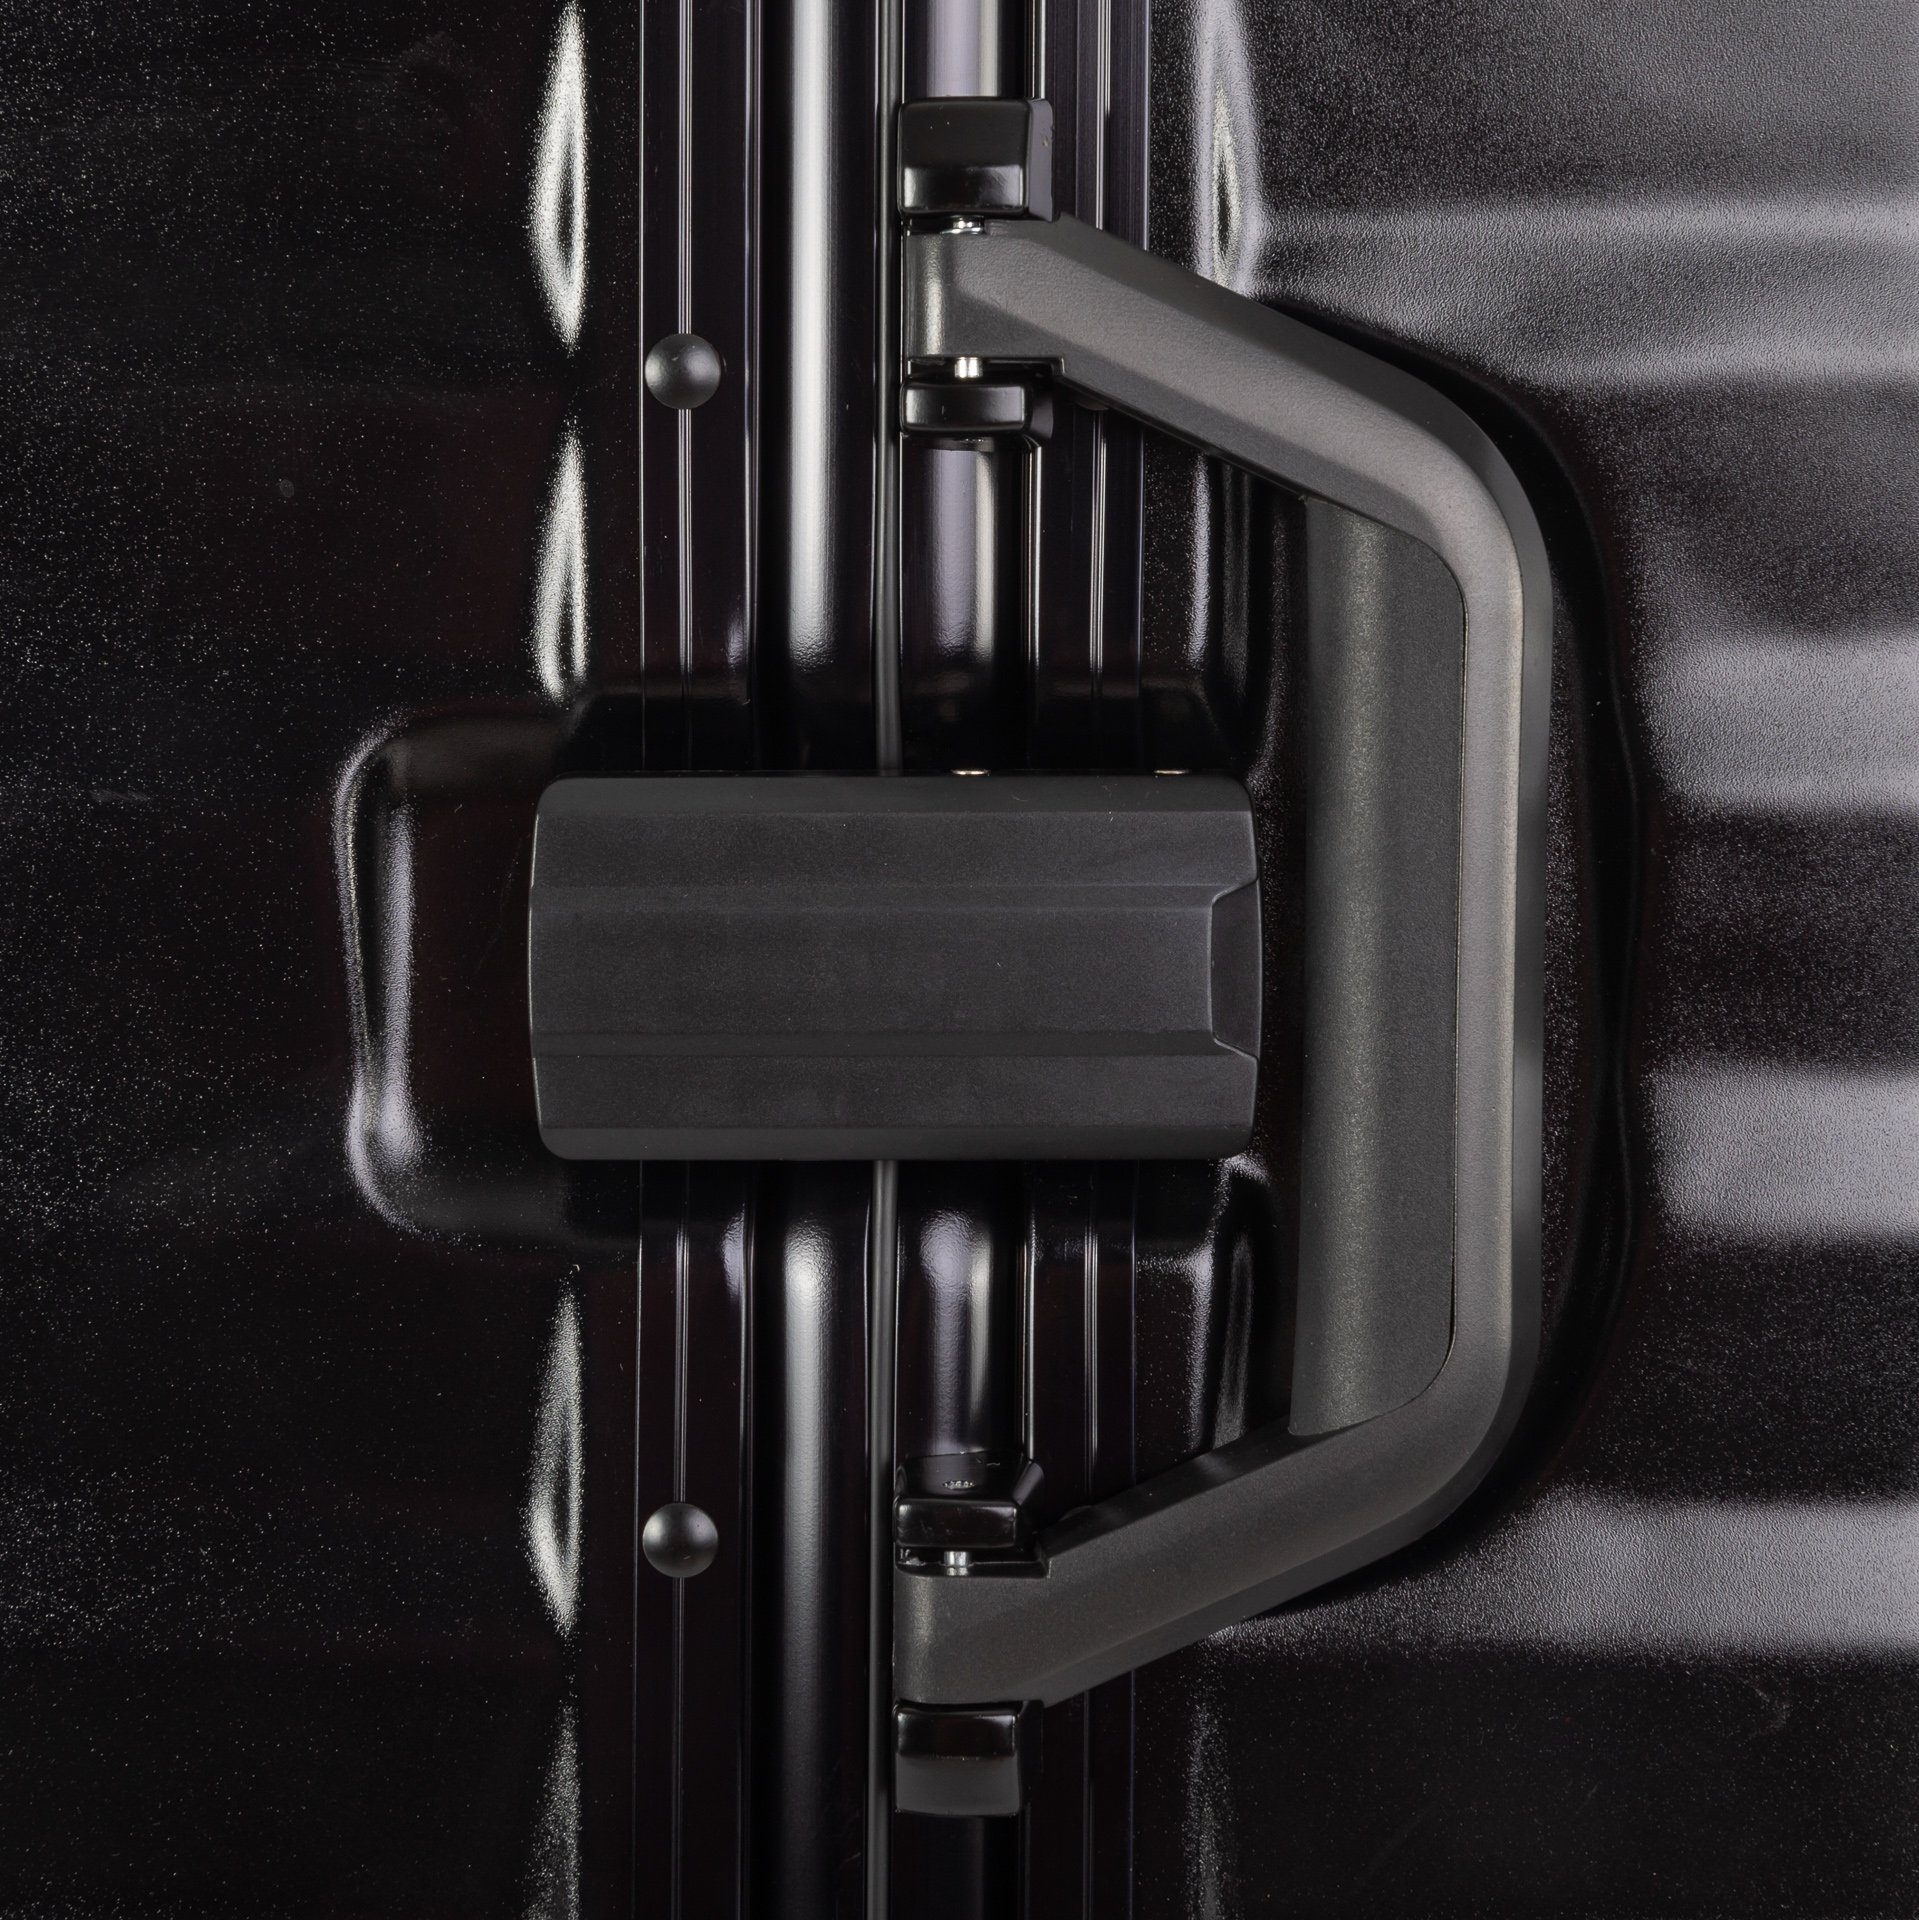 Aluminium Rollen, Aluminium-Rahmen TSA Zahlenschloss Paris, Travelhouse Hartschalen-Trolley schwarz 4 Hartschale